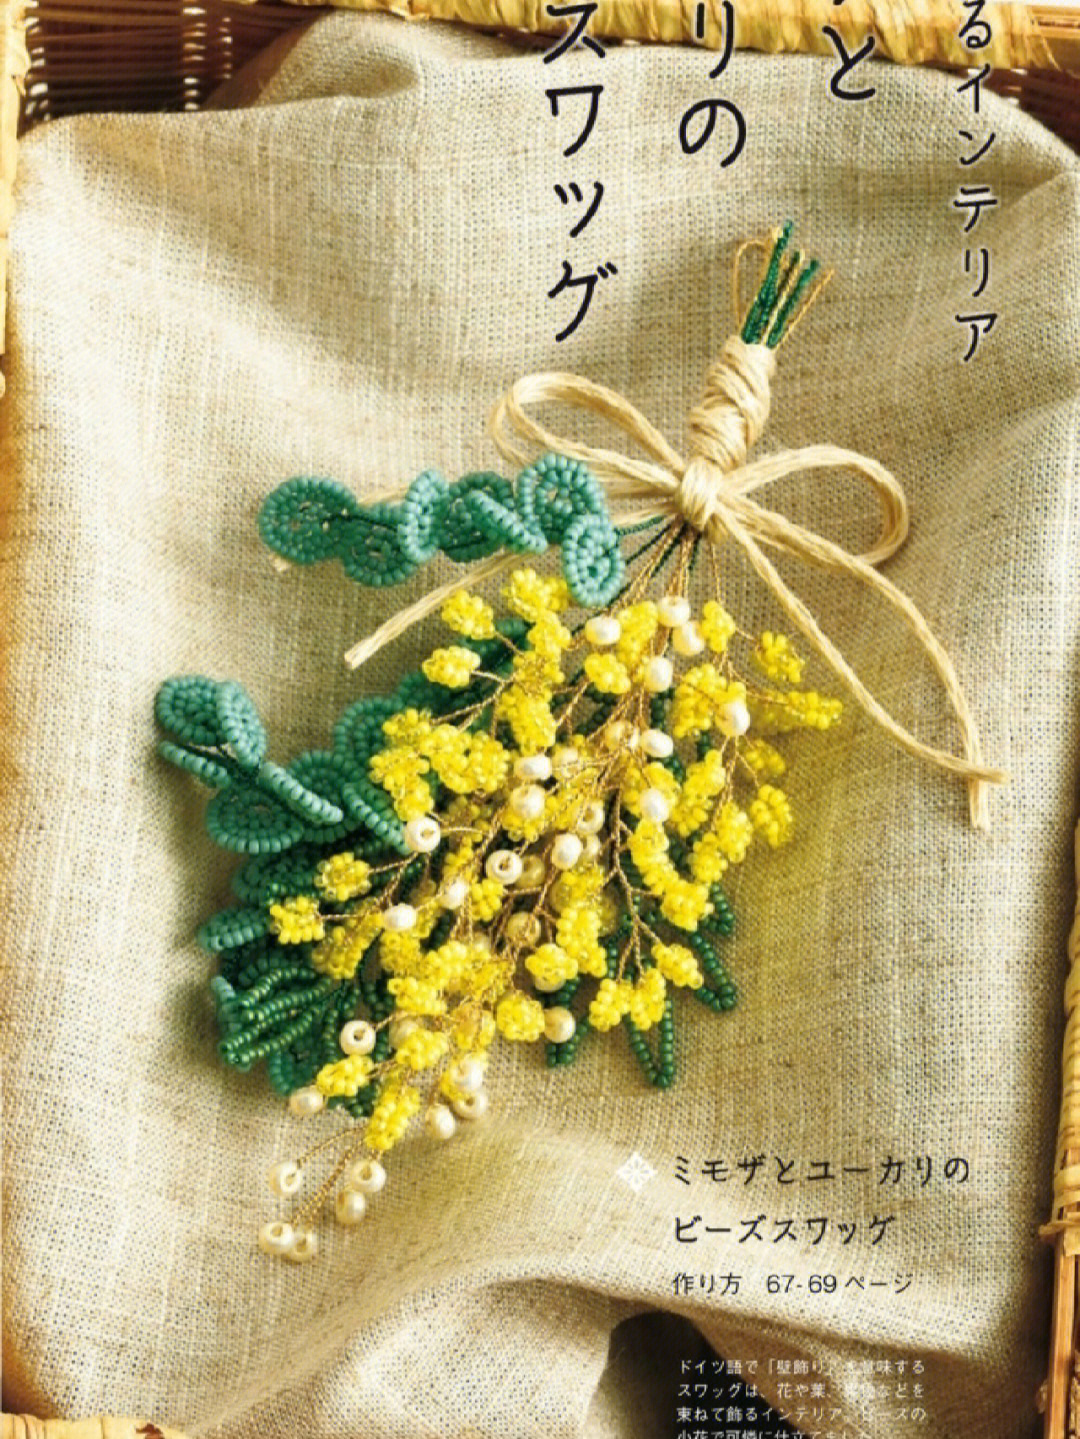 米珠花瓣串珠教程图片